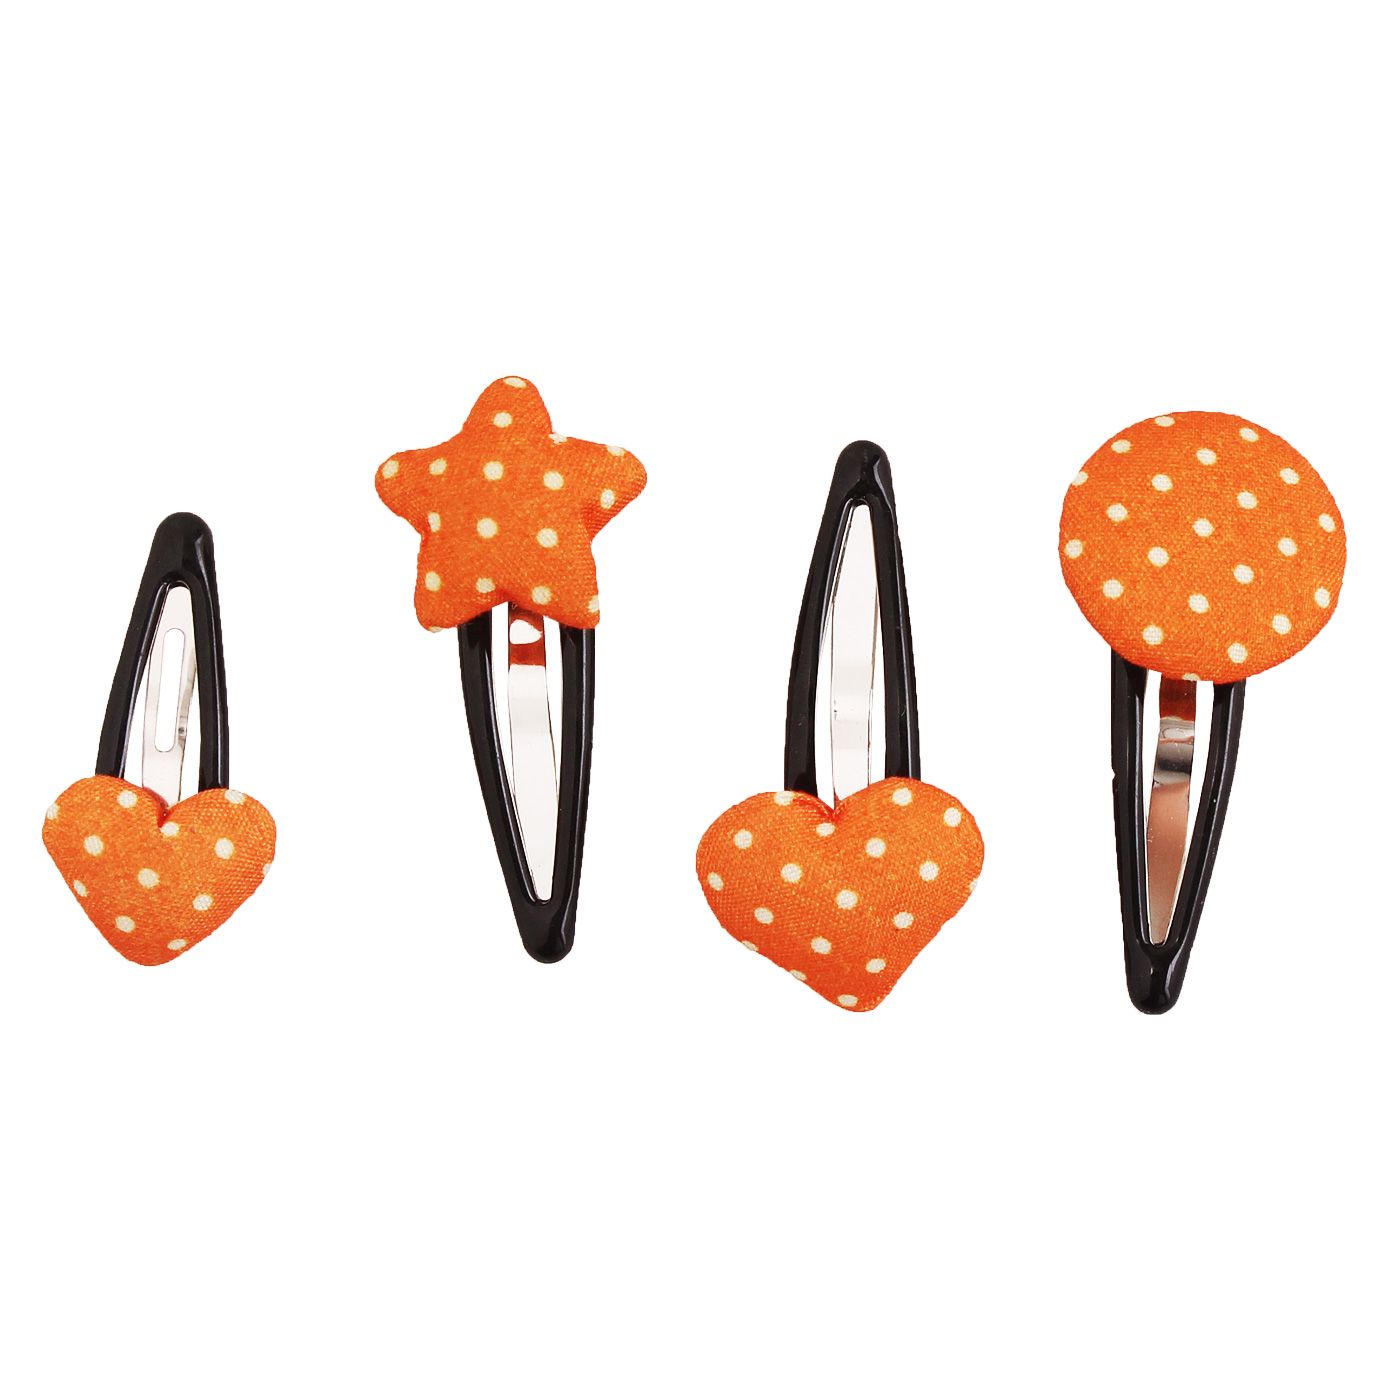 Bebecroc Polka Dot Fabric Snap Clip(4pcs) Orange - 2